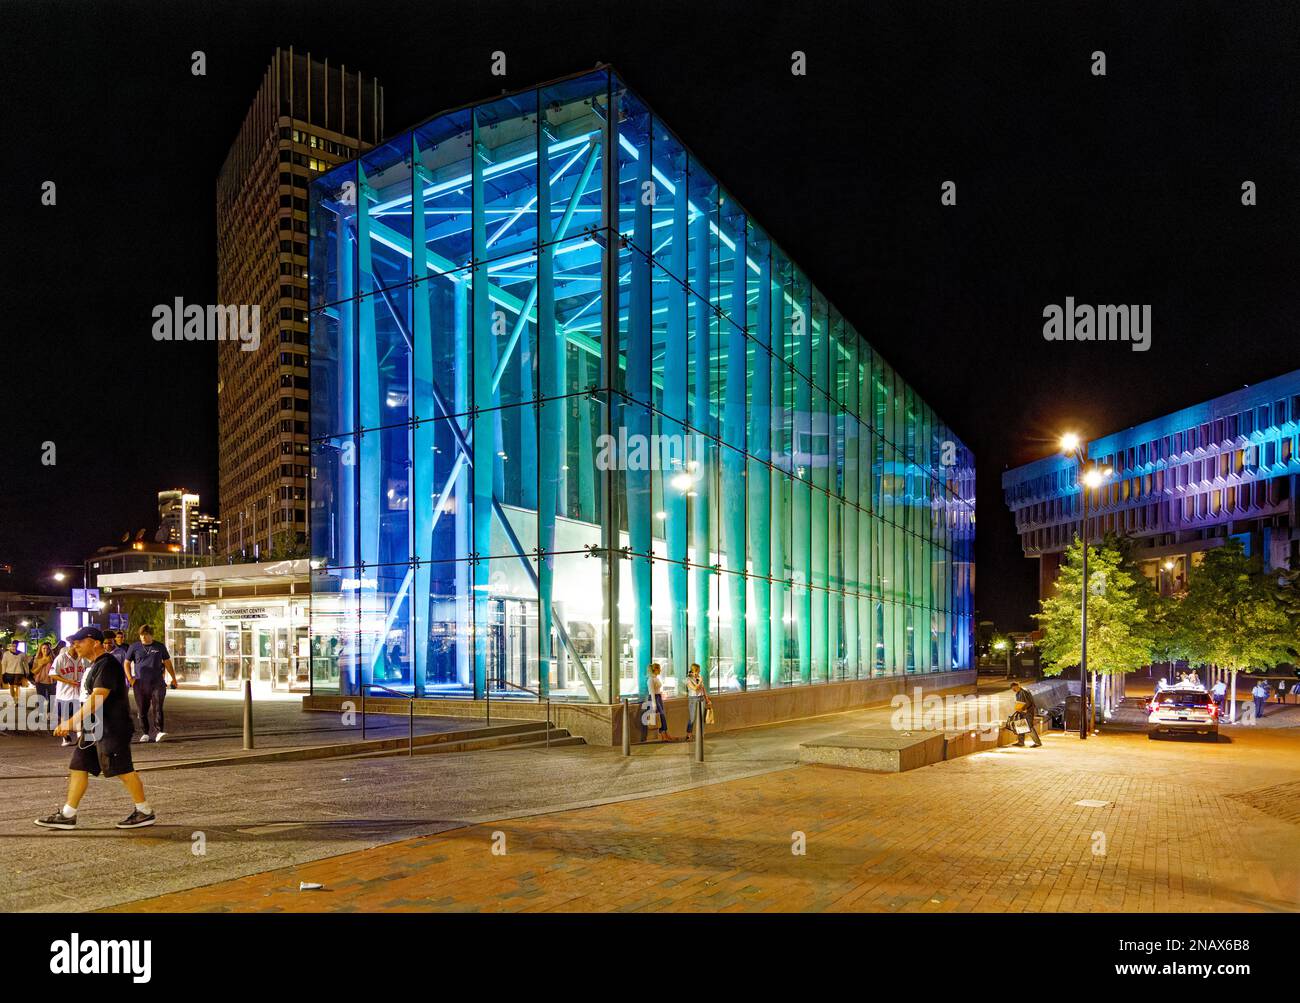 Boston : le hall de la gare MBTA du Government Center illumine City Hall Plaza ; l'hôtel de ville se trouve sur la droite. (Septembre 2019) Banque D'Images